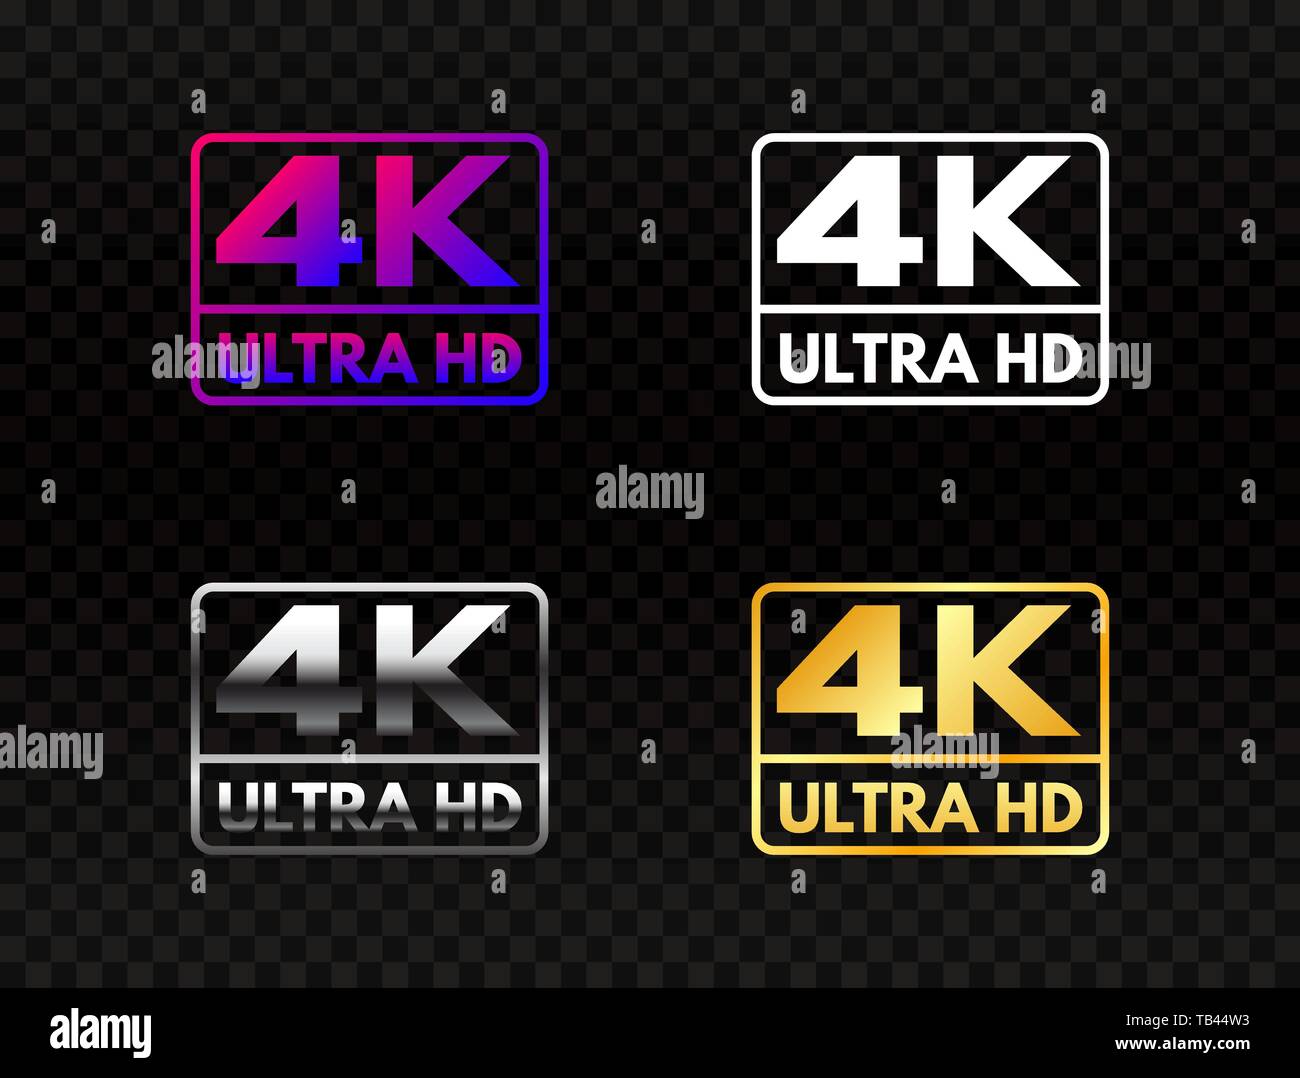 4K Ultra HD auf transparenten Hintergrund. High Definition. UHD Symbol in  Gold und Silber. 4K-Auflösung Farbe markieren. Full-HD-Video Lab  Stock-Vektorgrafik - Alamy